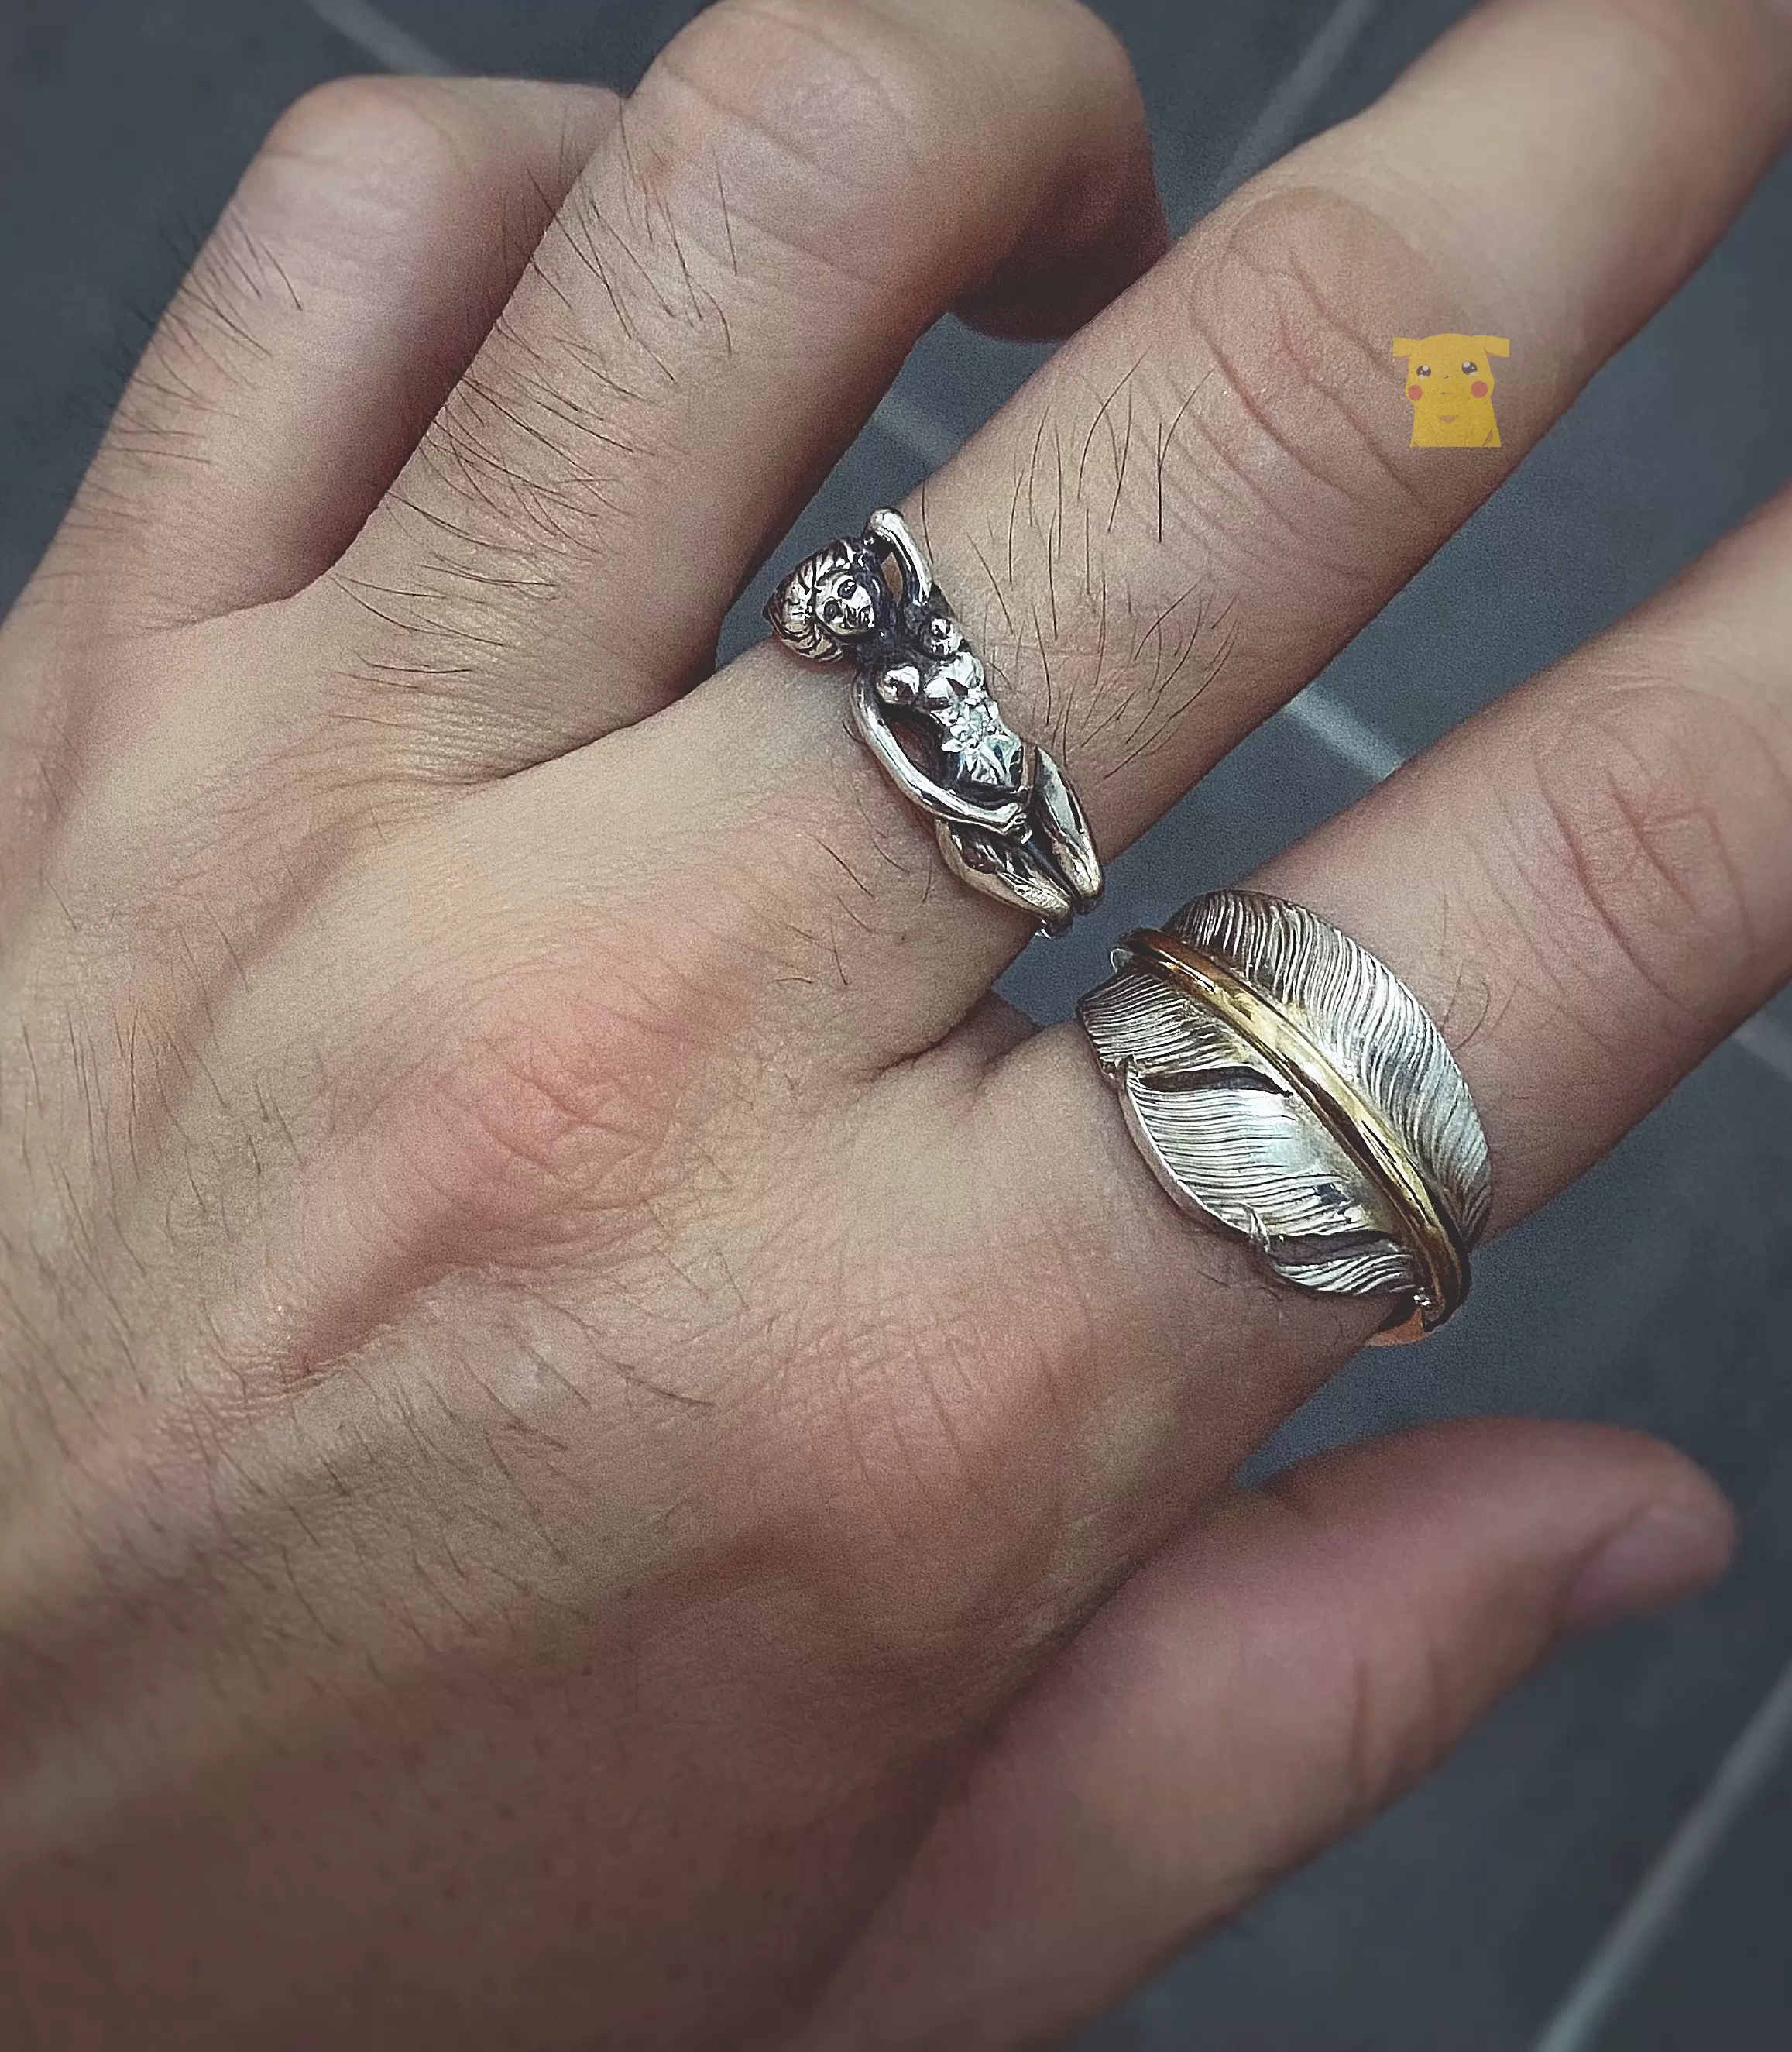 国内现货正品WACKO MARIA NUDE RING 925银制形状萝体女人戒指-Taobao